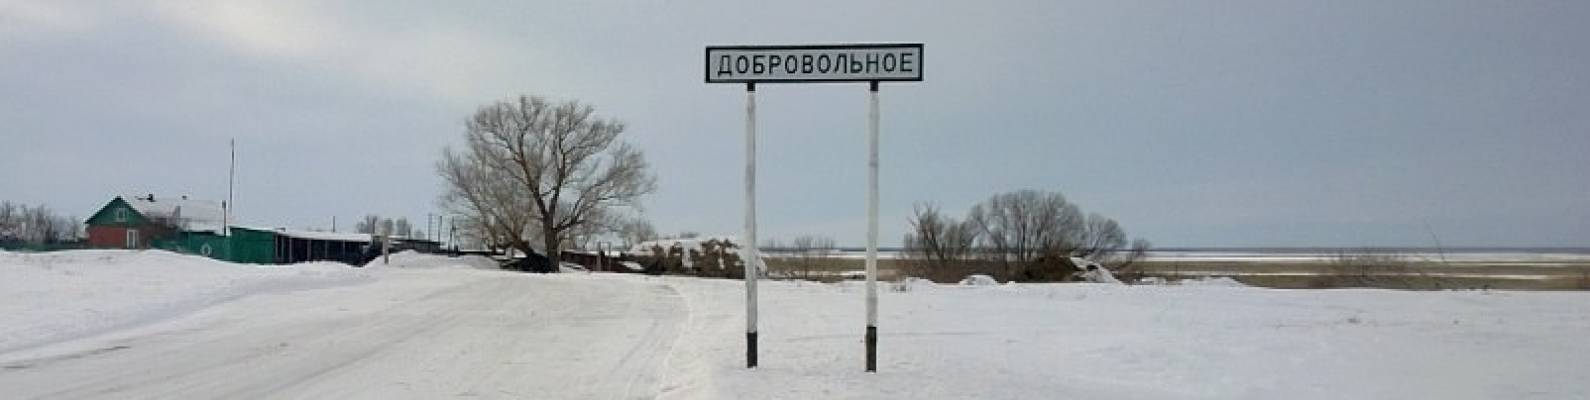  деревня Добровольное